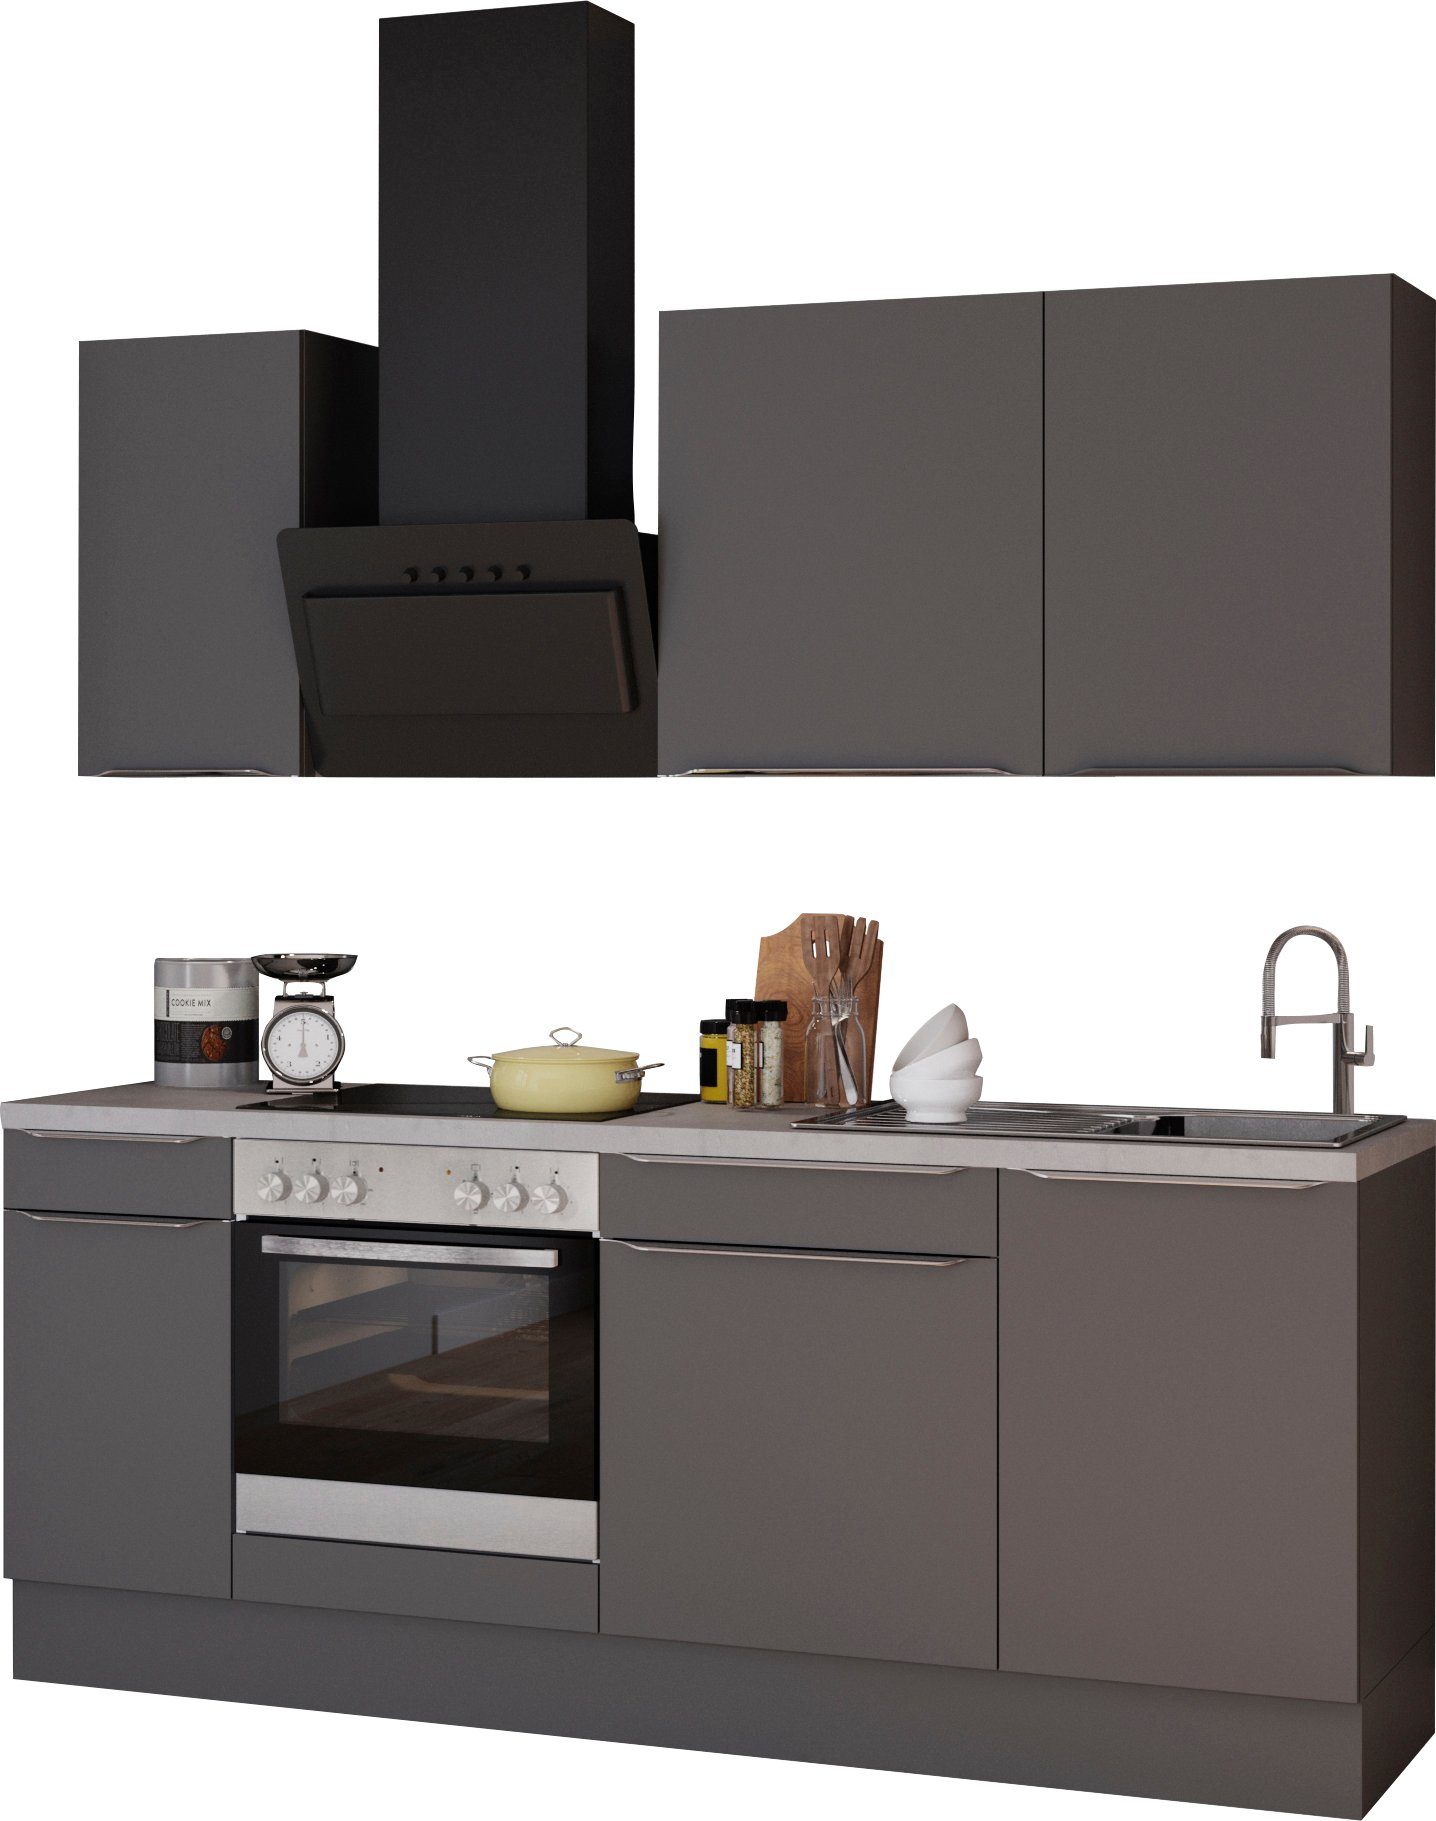 OPTIFIT Küchenzeile Aken, mit E-Geräten, Breite 210 cm, Stabile  Metallauszüge bis 25 kg belastbar